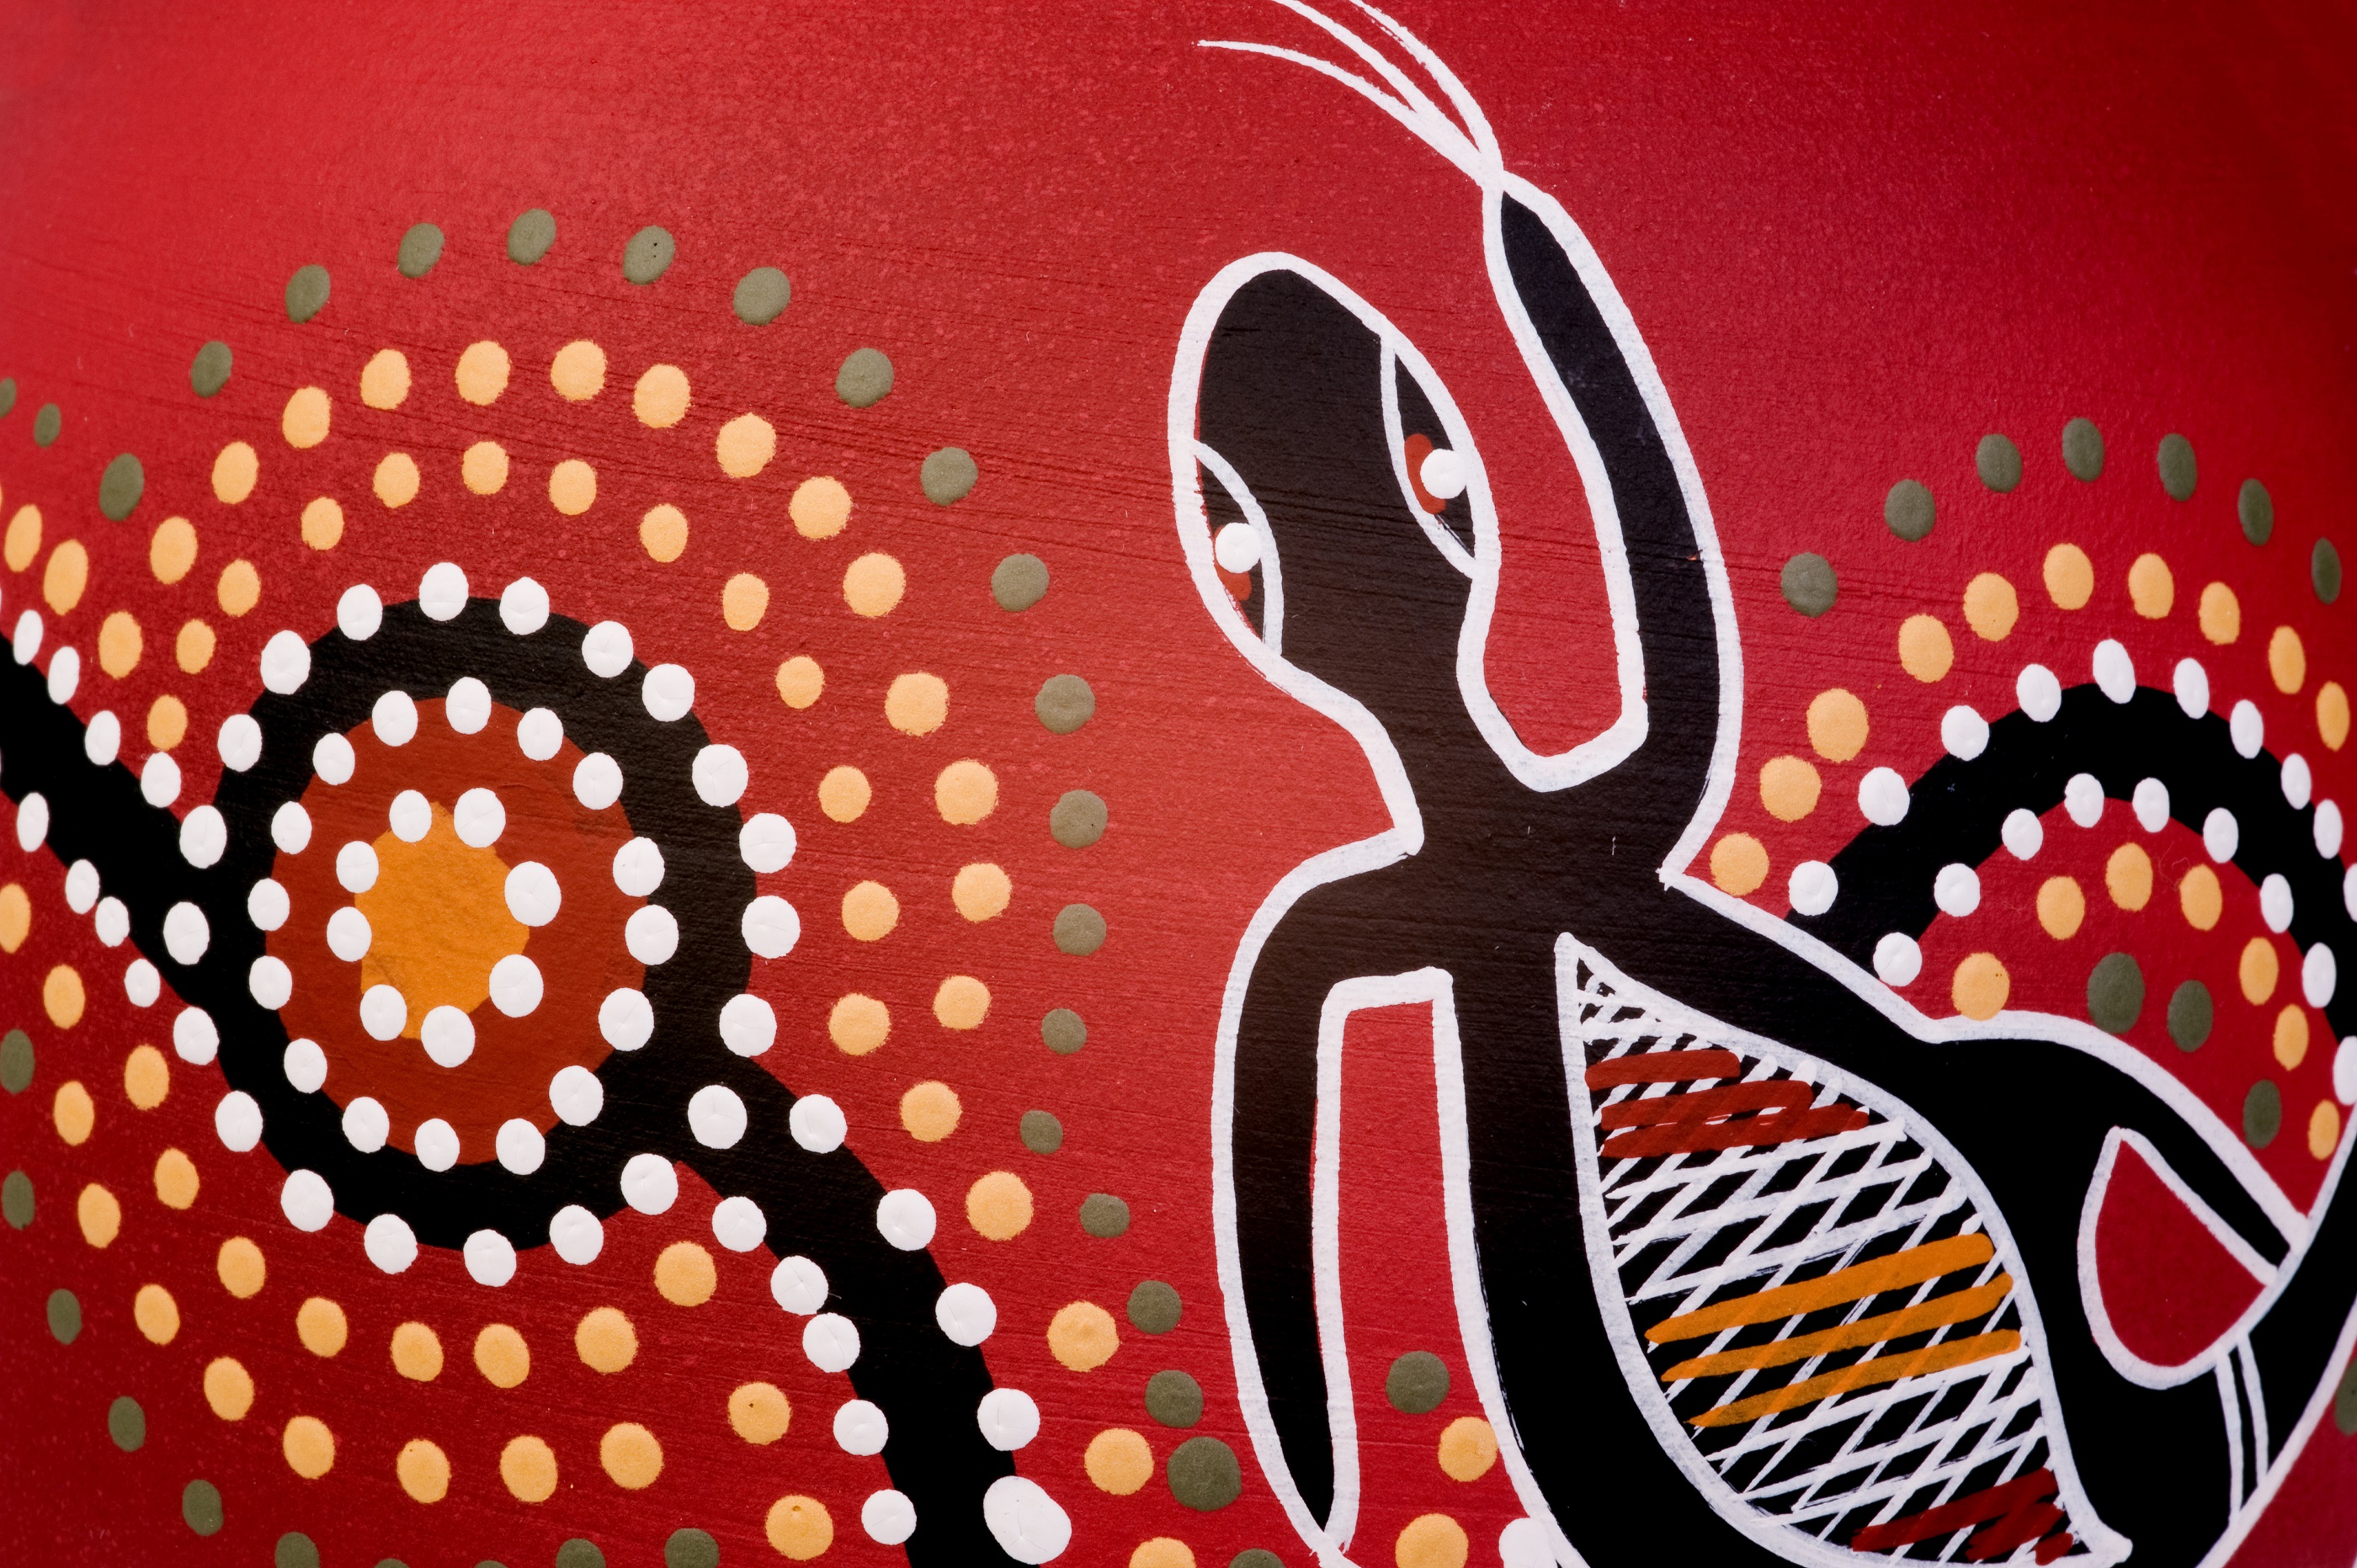 Aboriginal art in Australia